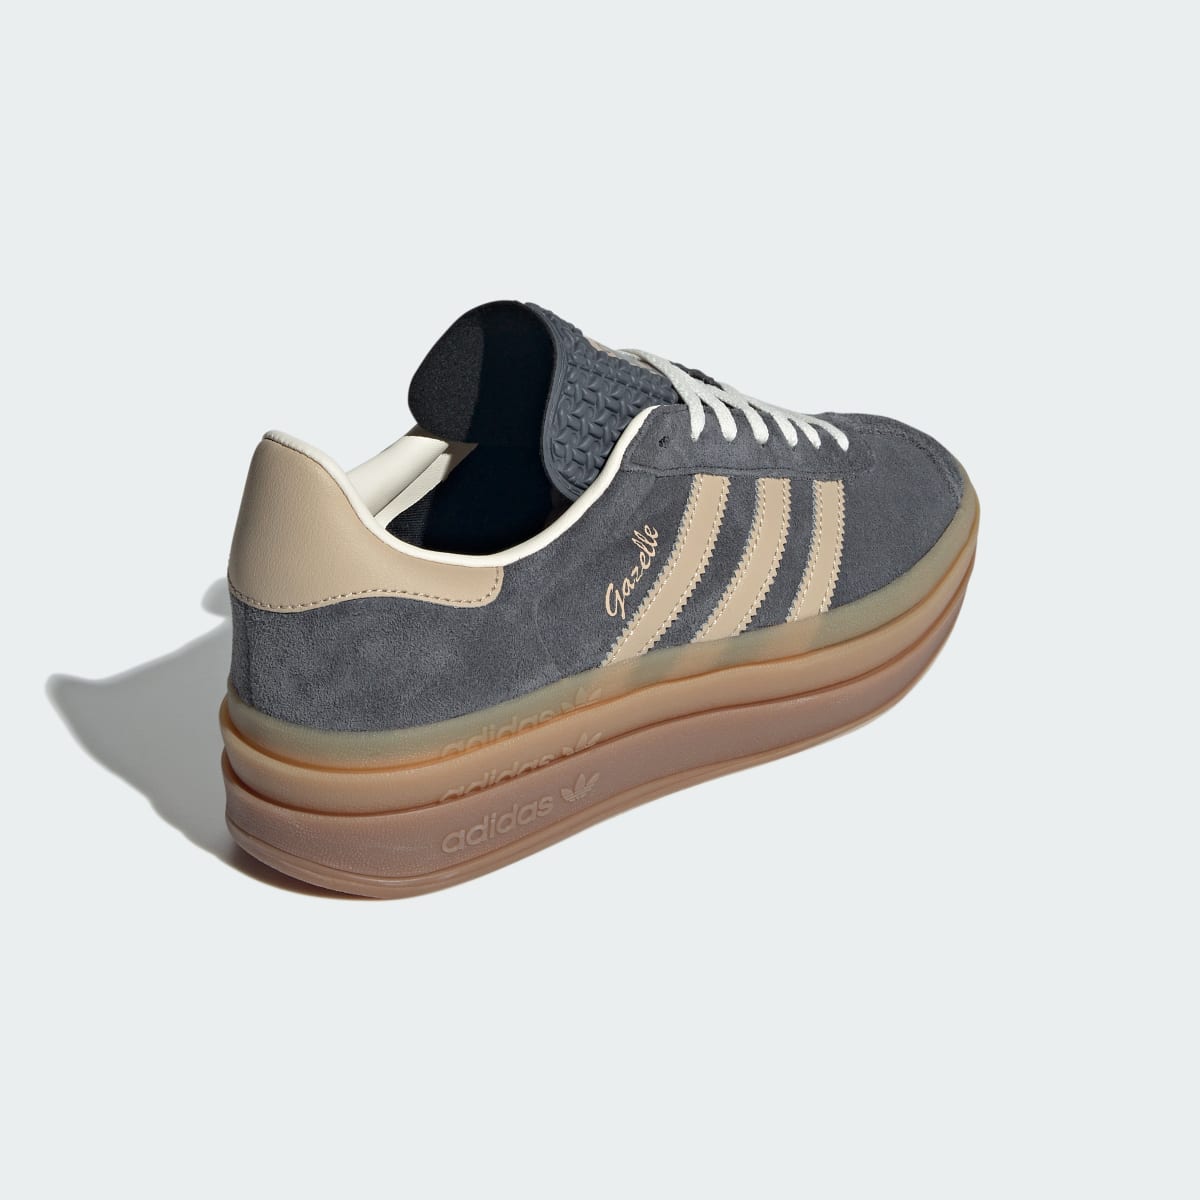 Adidas Gazelle Bold Shoes. 6